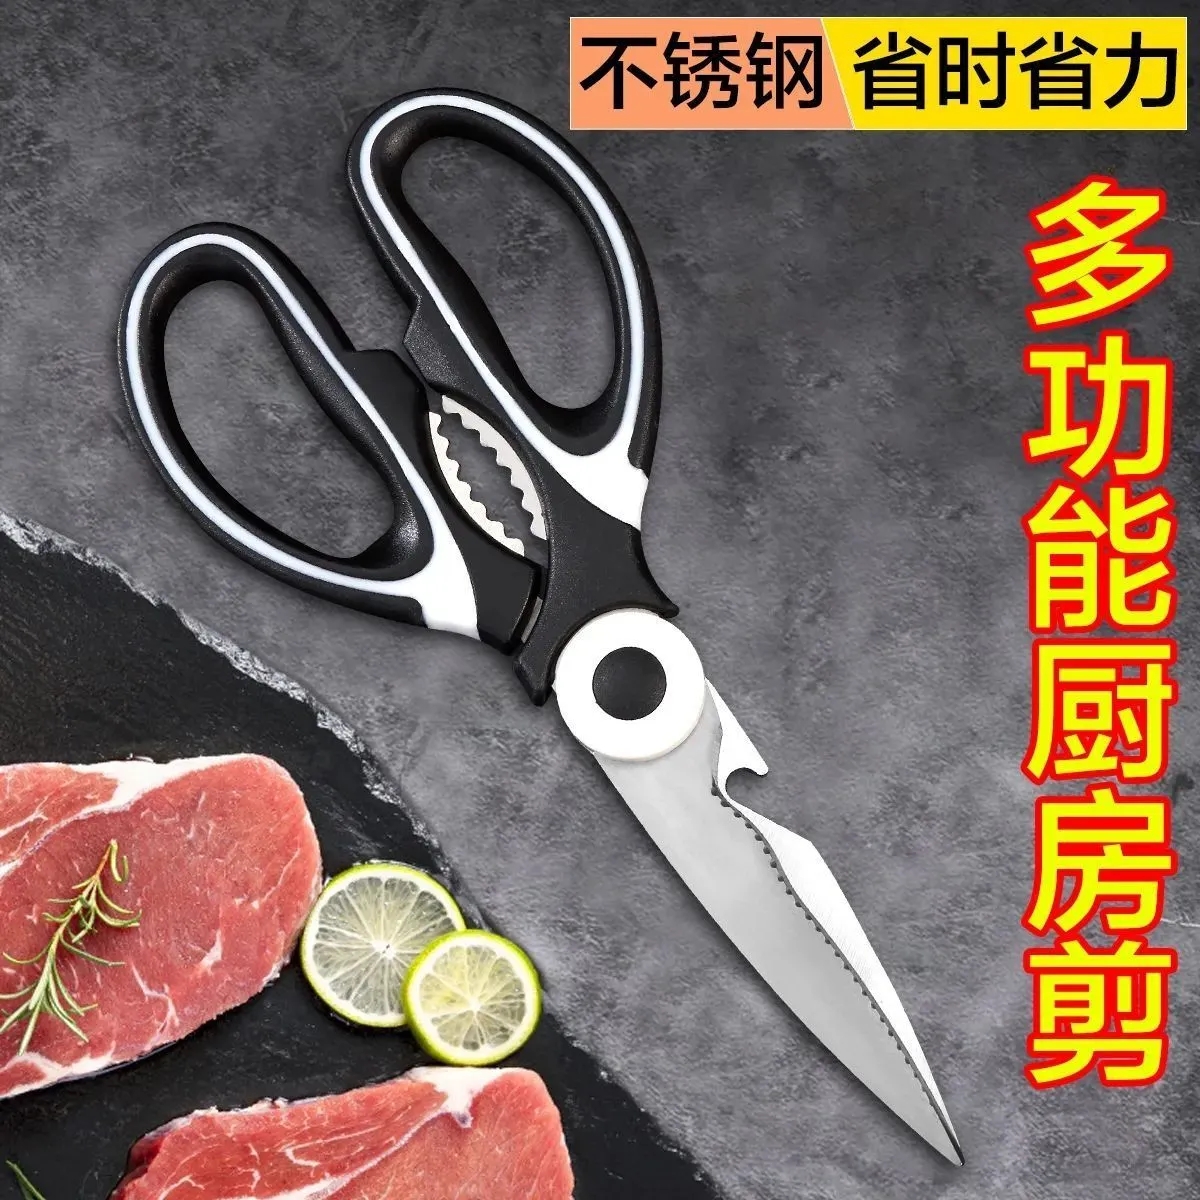 厨房剪刀家用高级多功能剪子杀鱼烤肉剪骨头专用不锈钢锋利食物剪